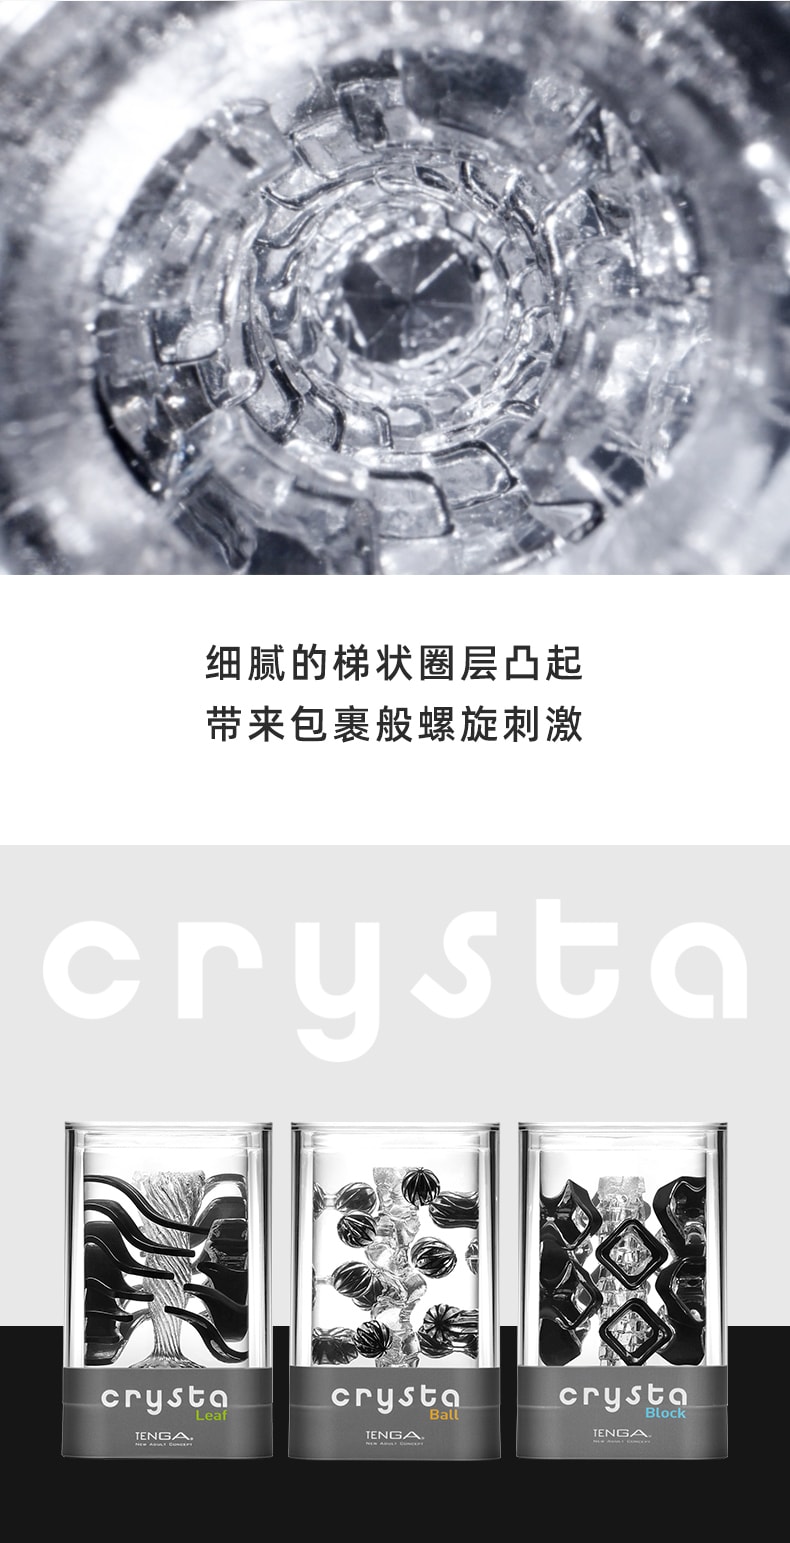 日本 TENGA 进口飞机杯新品CRYSTA内雕颗粒 #叶片